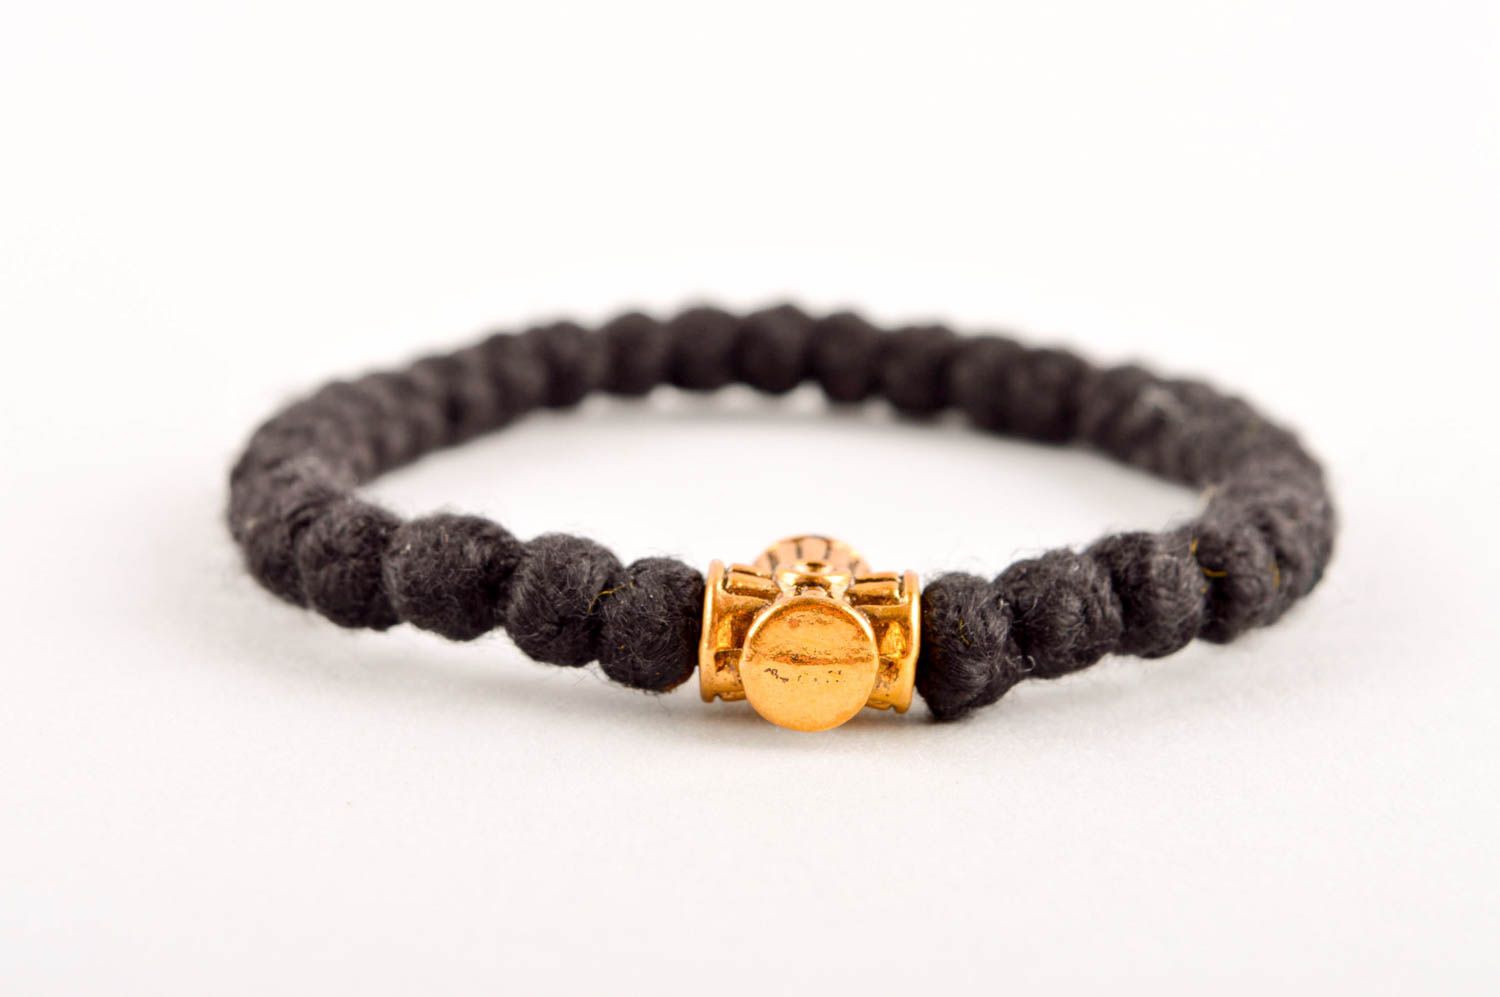 Handmade bracelet designer braсelet rosary bracelet unusual bracelet gift ideas photo 4